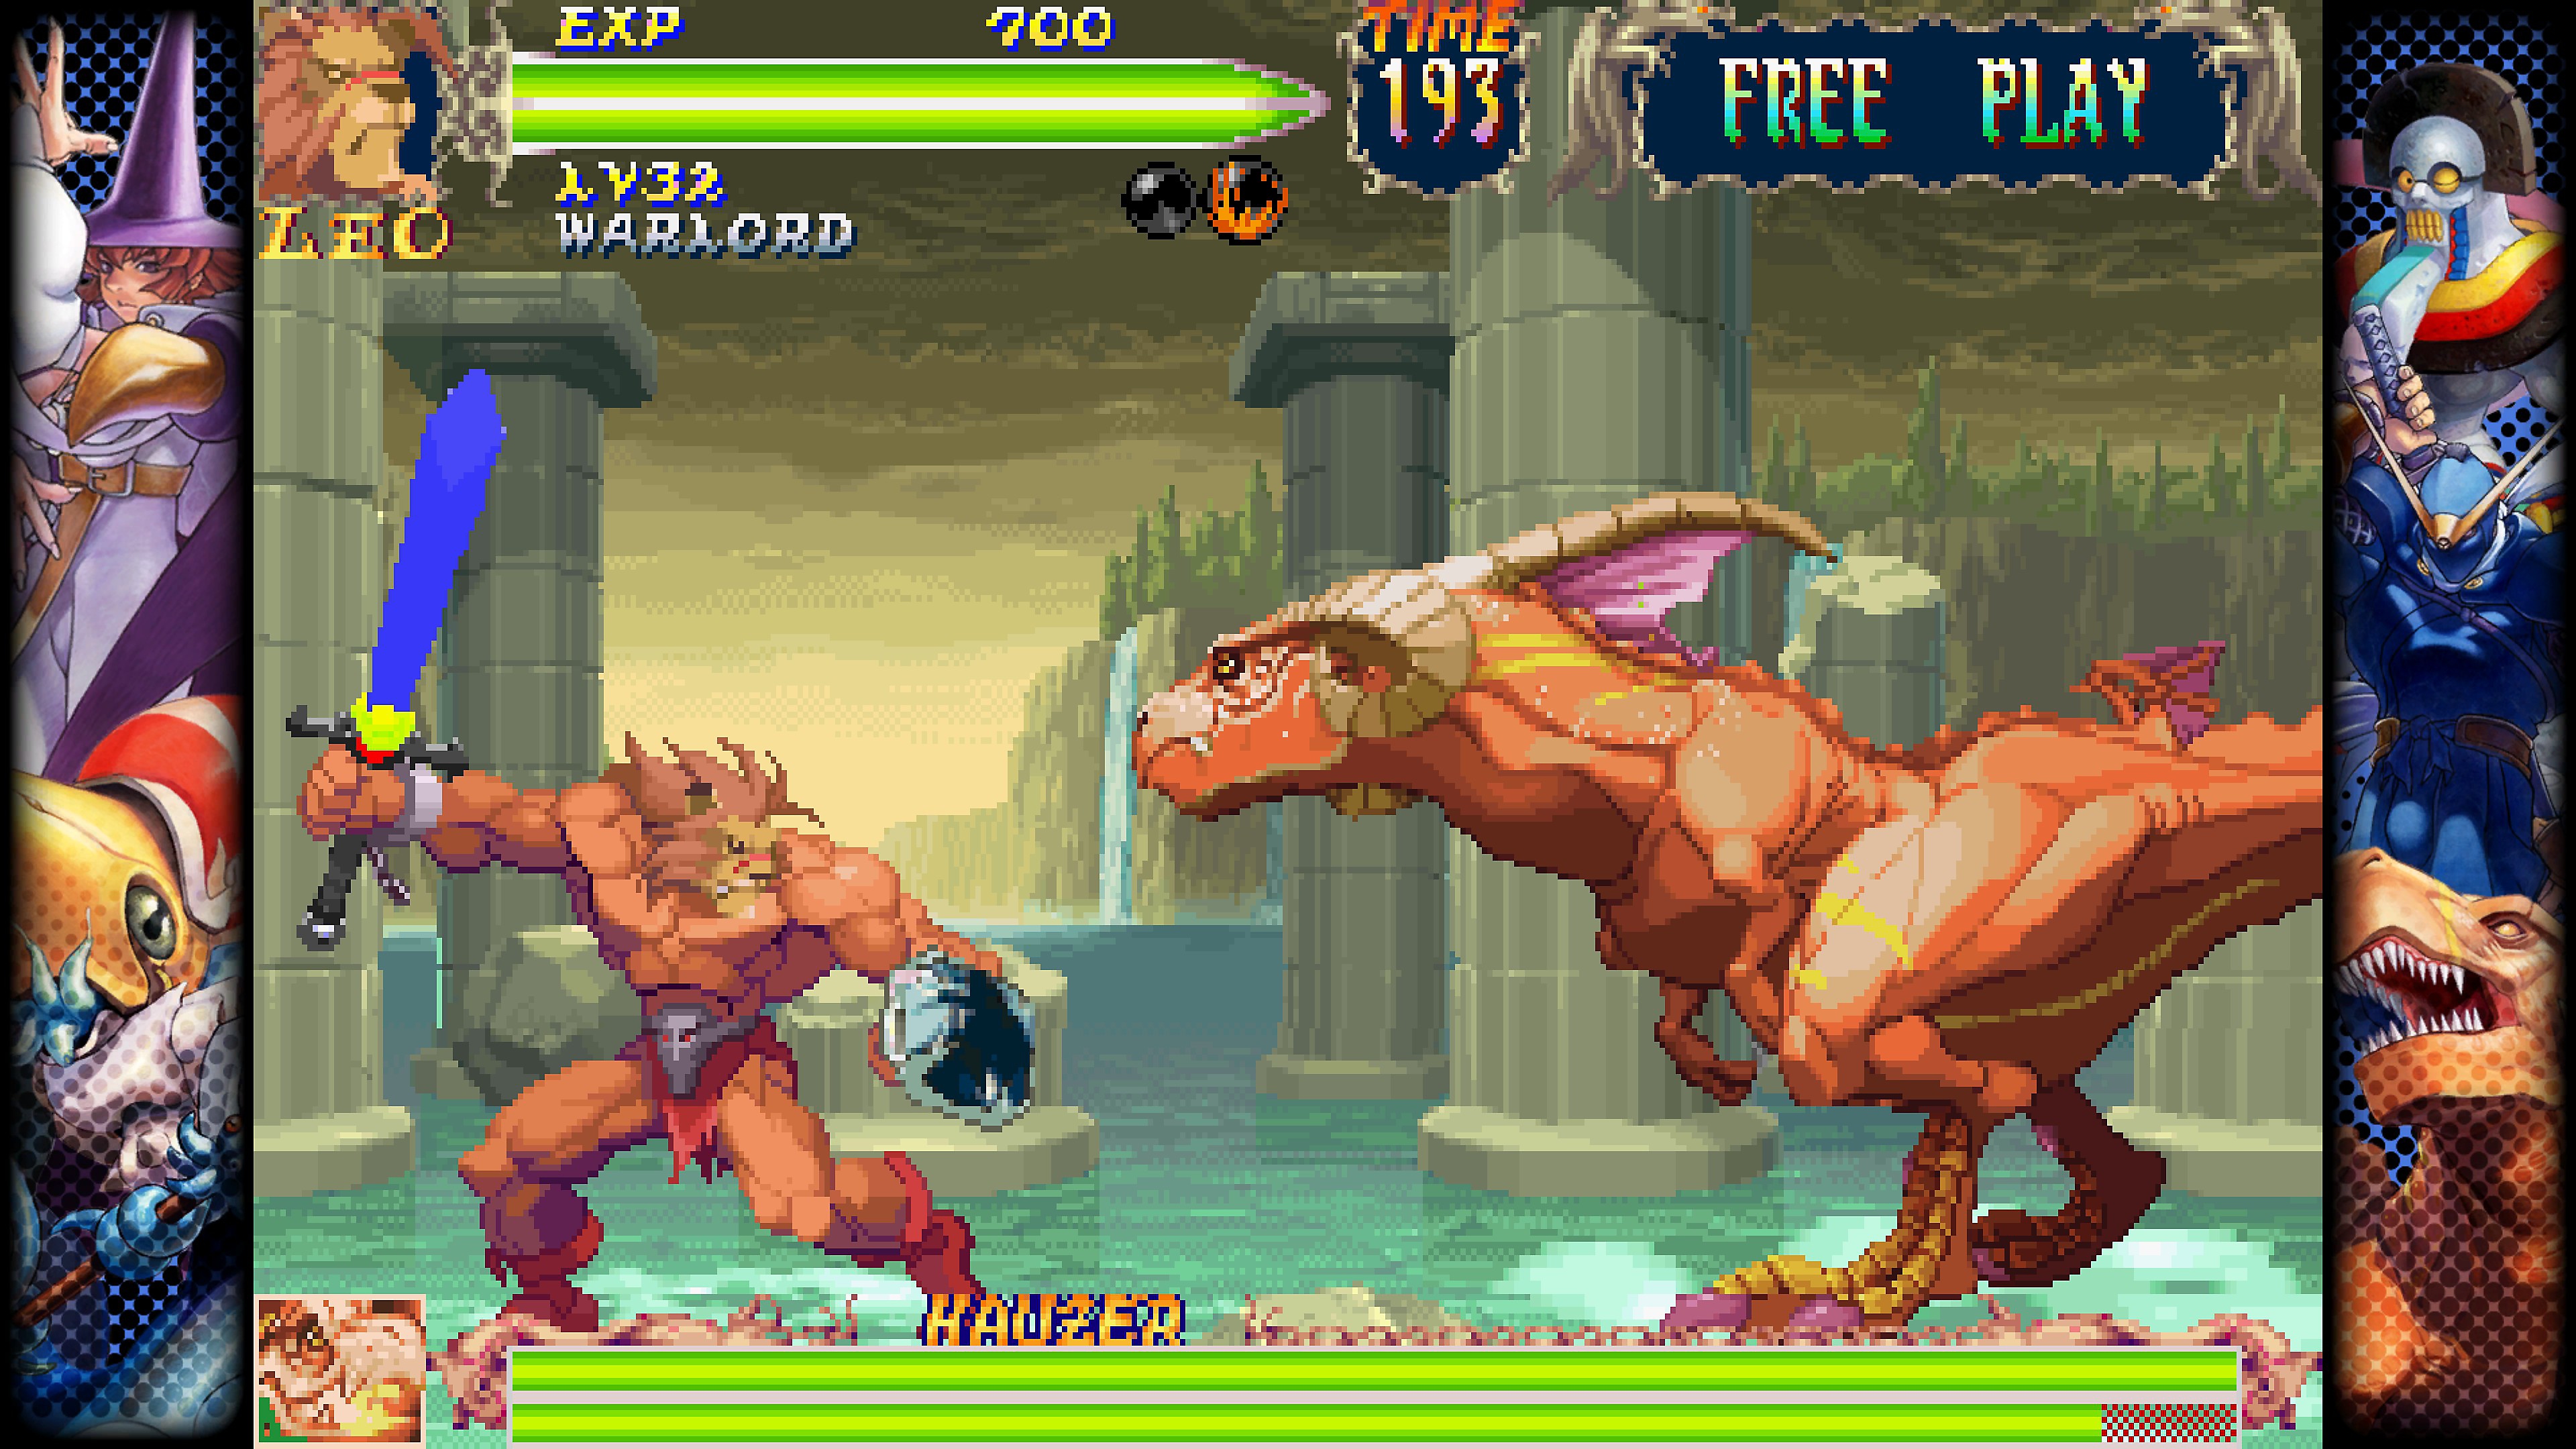 Capcom Fighting Collection – zrzut ekranu przedstawiający walkę pomiędzy dwiema postaciami